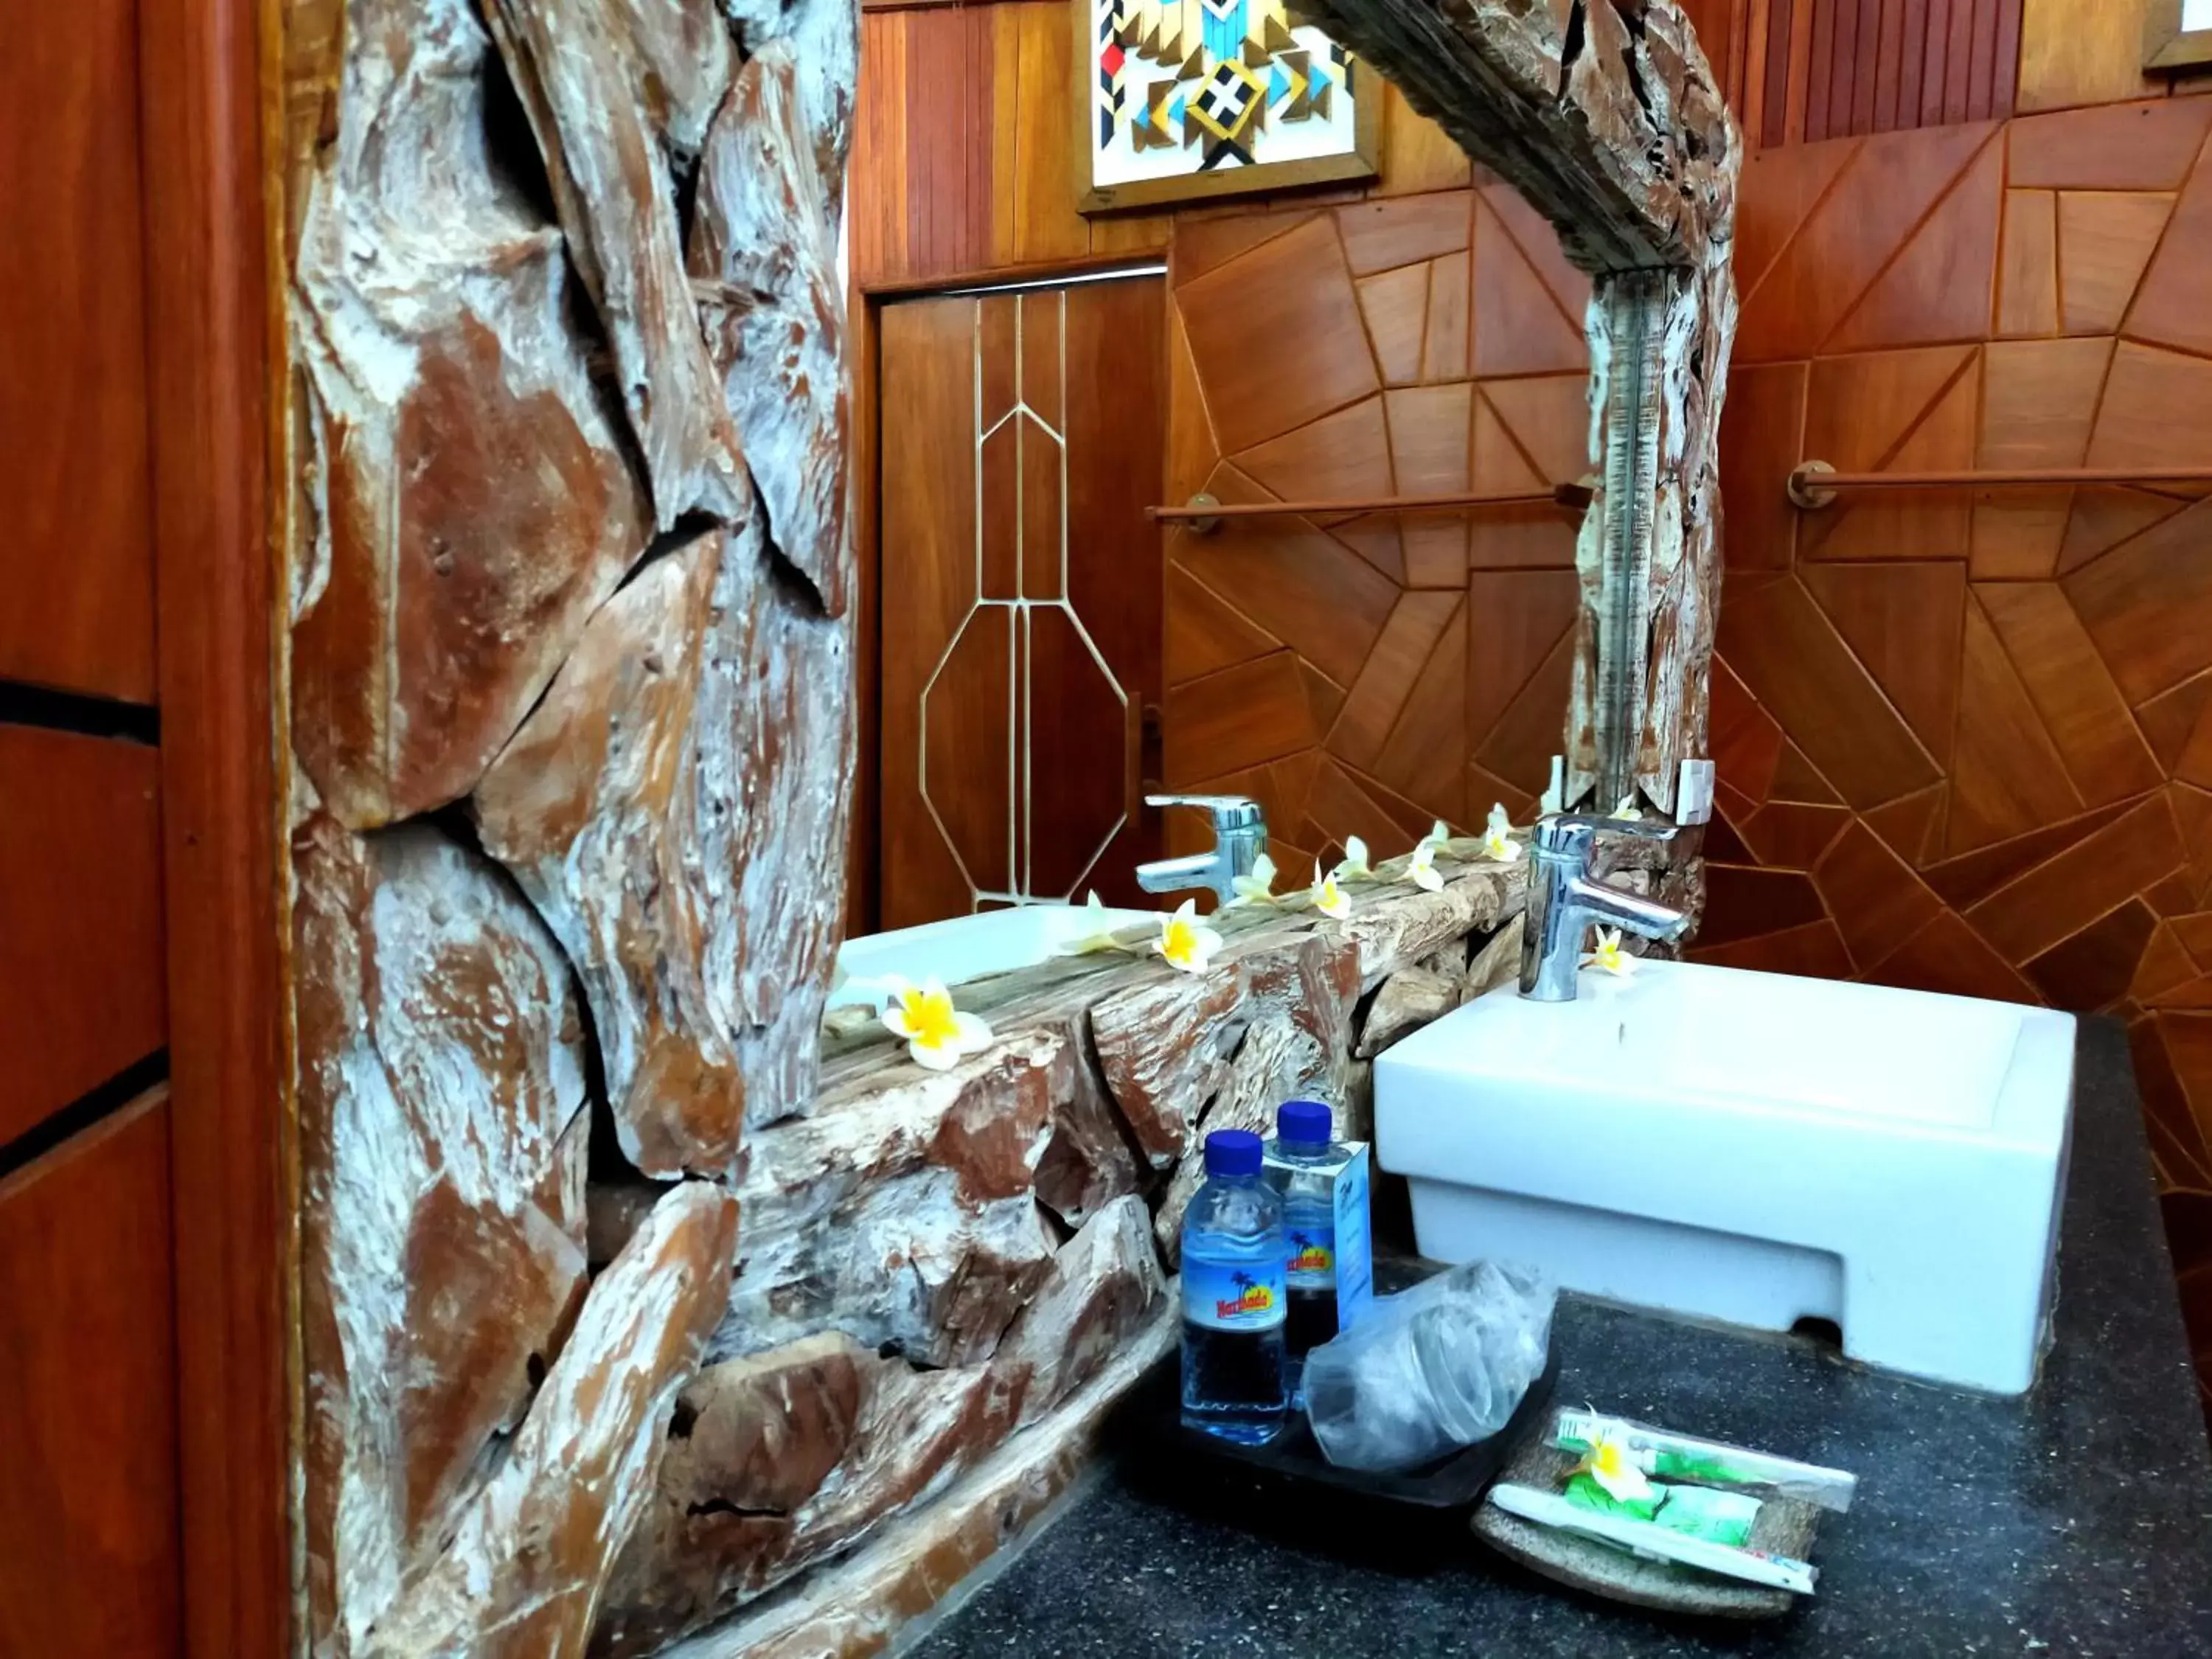 Bathroom in The Trawangan Resort